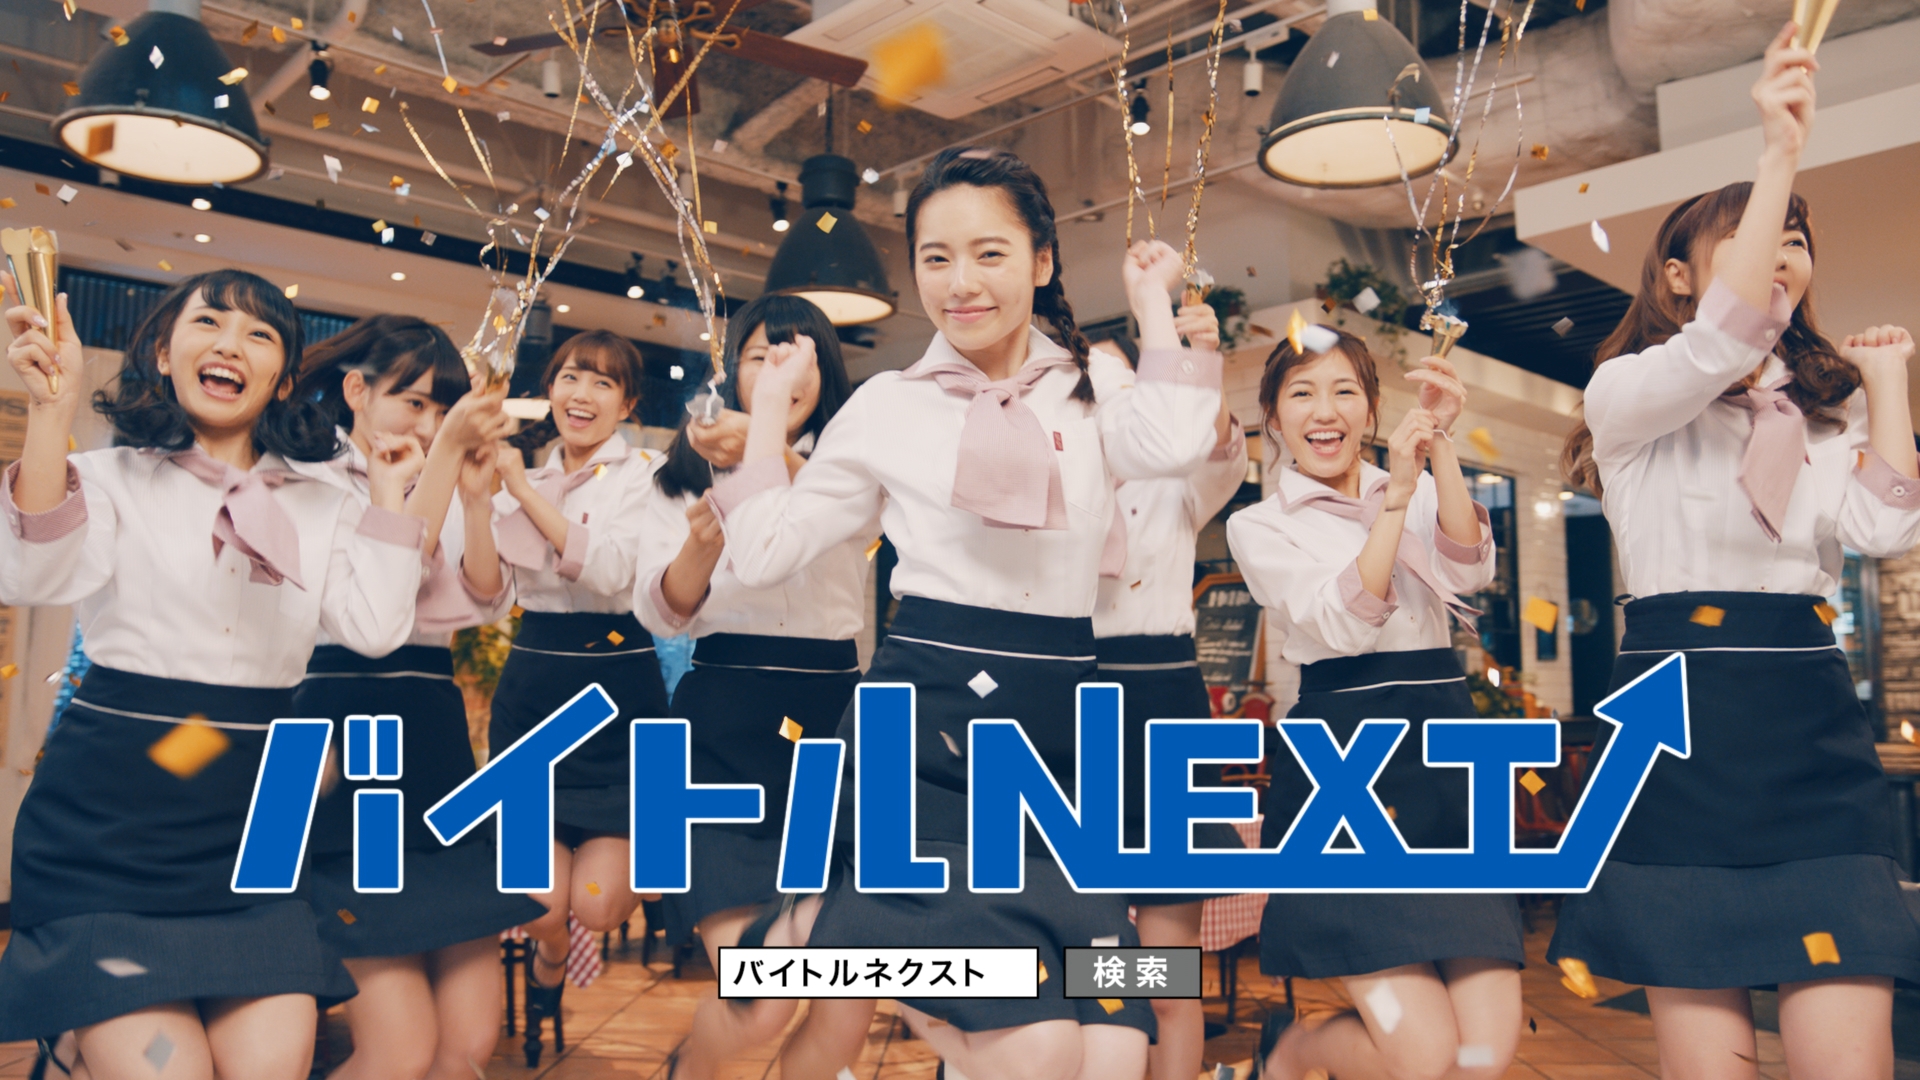 卒業を宣言した島崎遥香さんが次に進む道は Nextステージ をメンバーが祝福 バイトルnext 初のcmが完成 ディップのプレスリリース